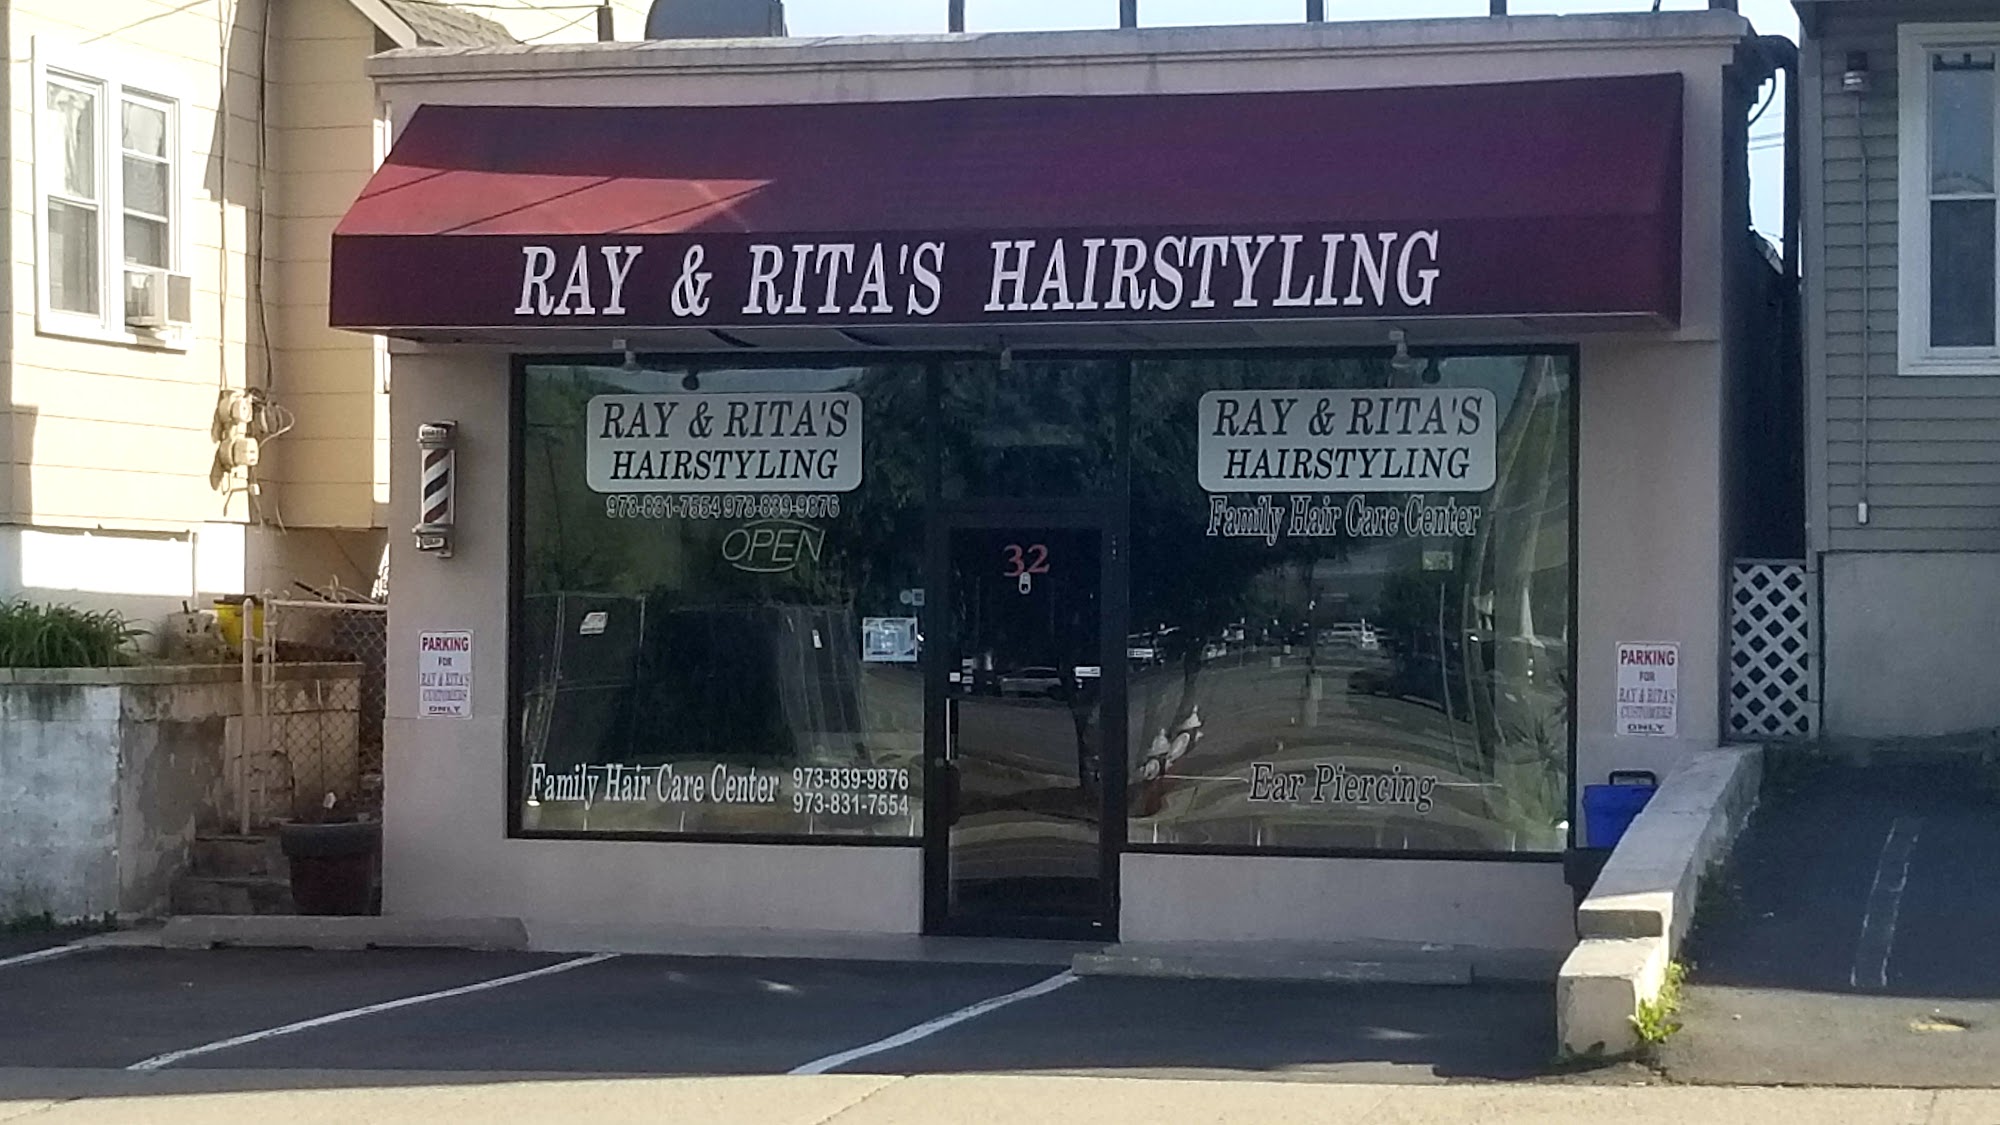 Ray & Rita's Hairstyling